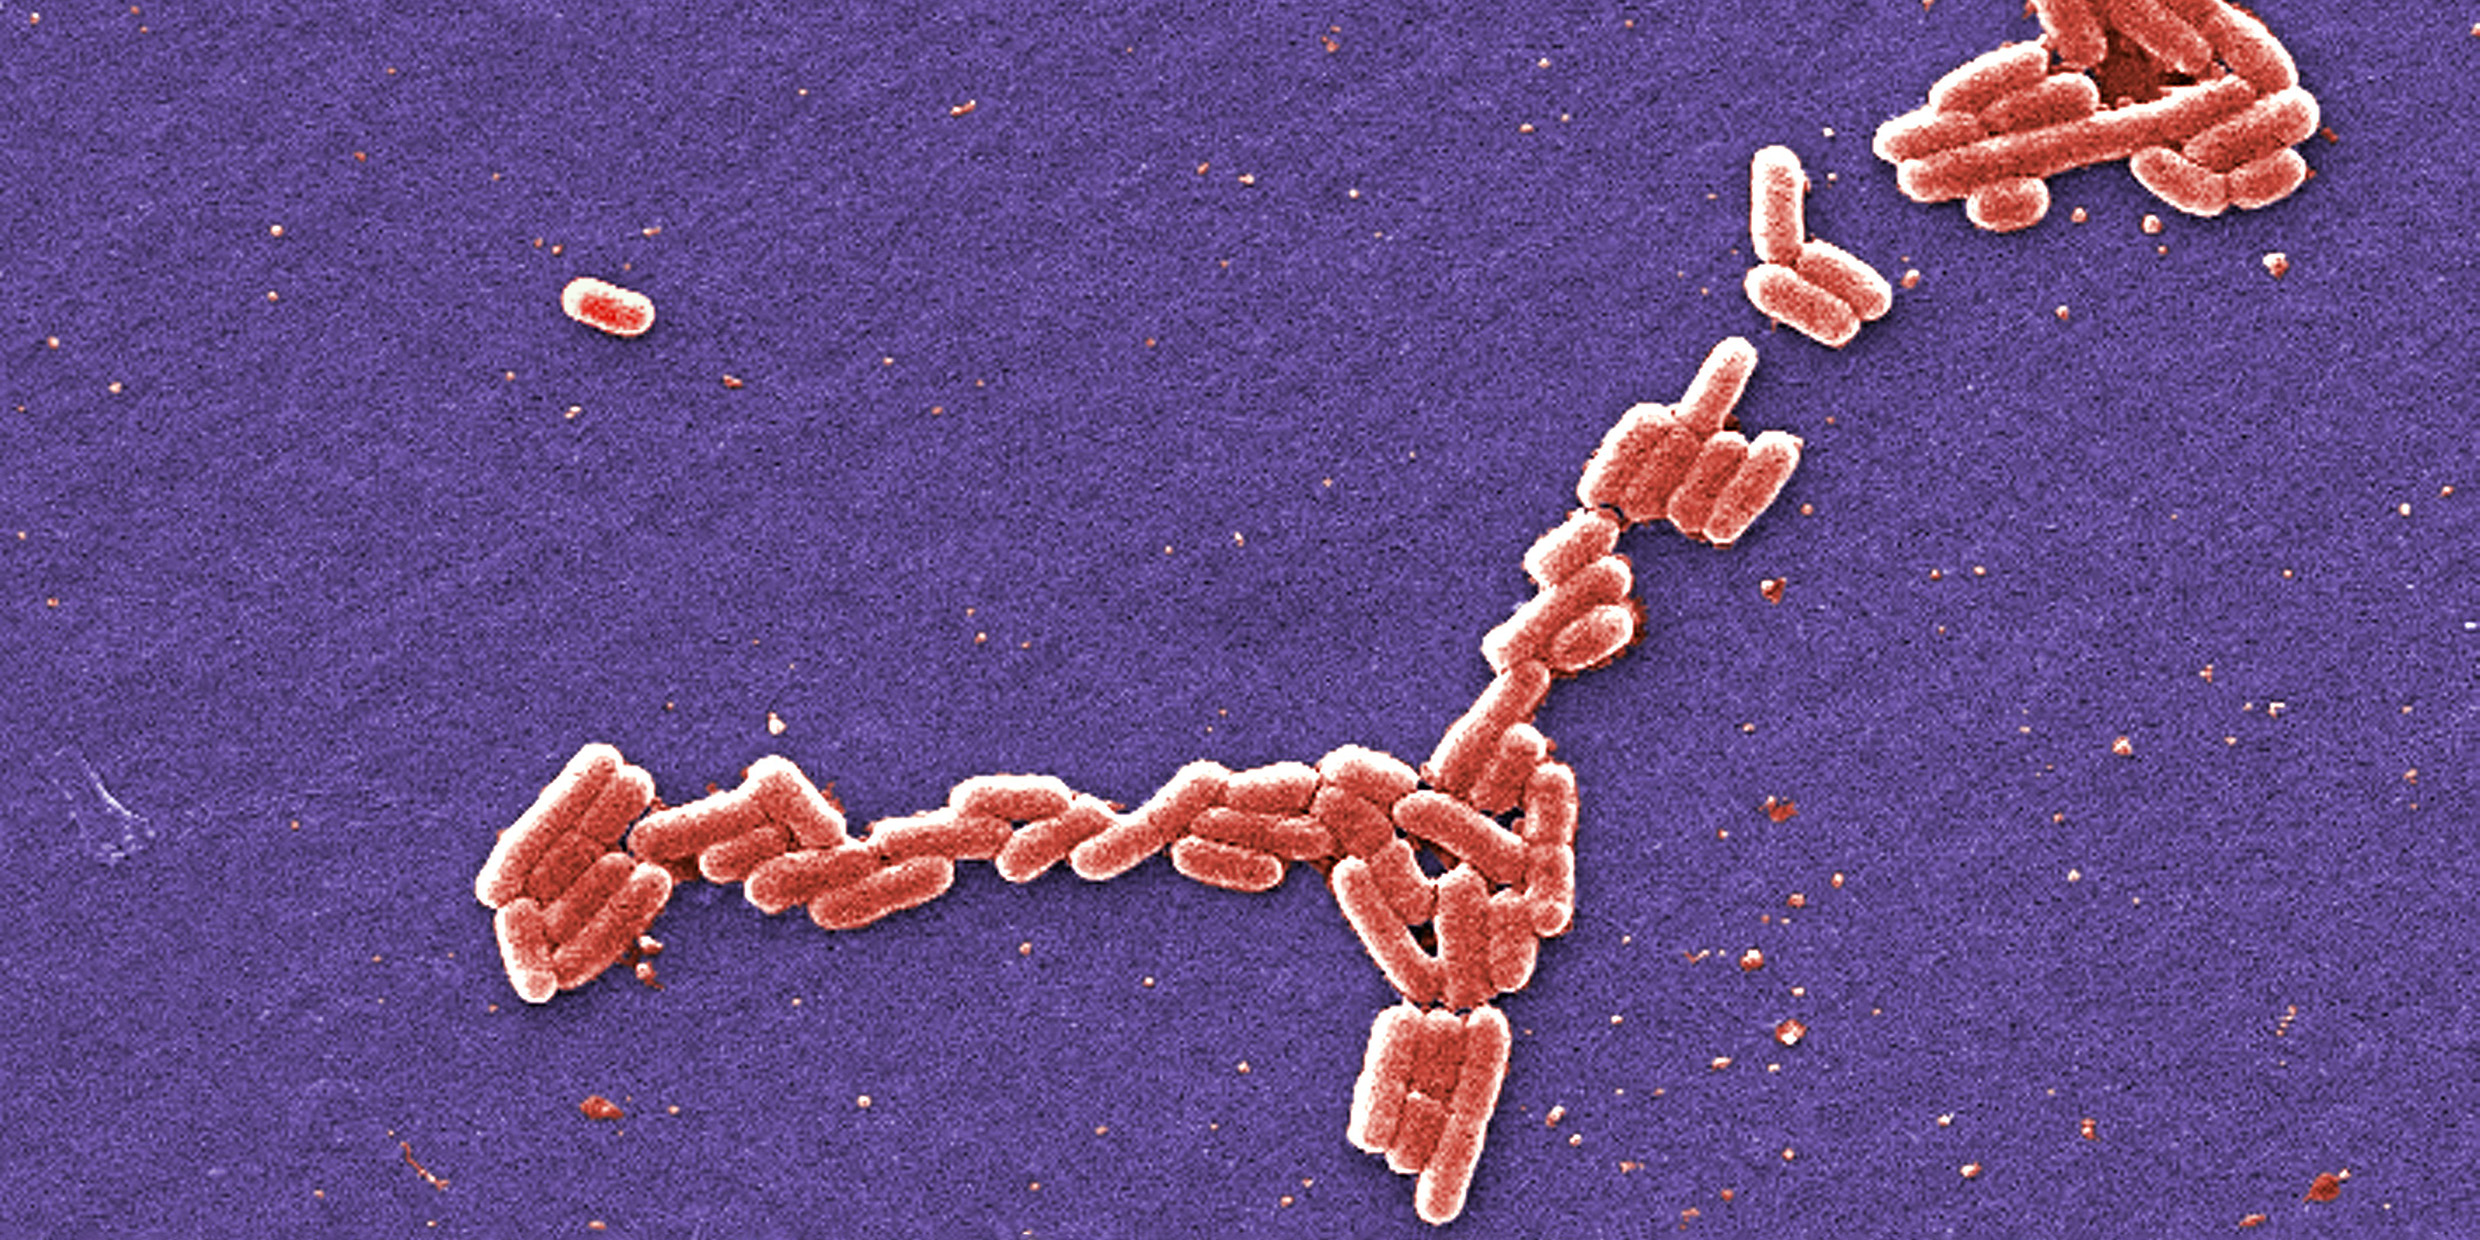 Microscopic image of E. coli bacteria